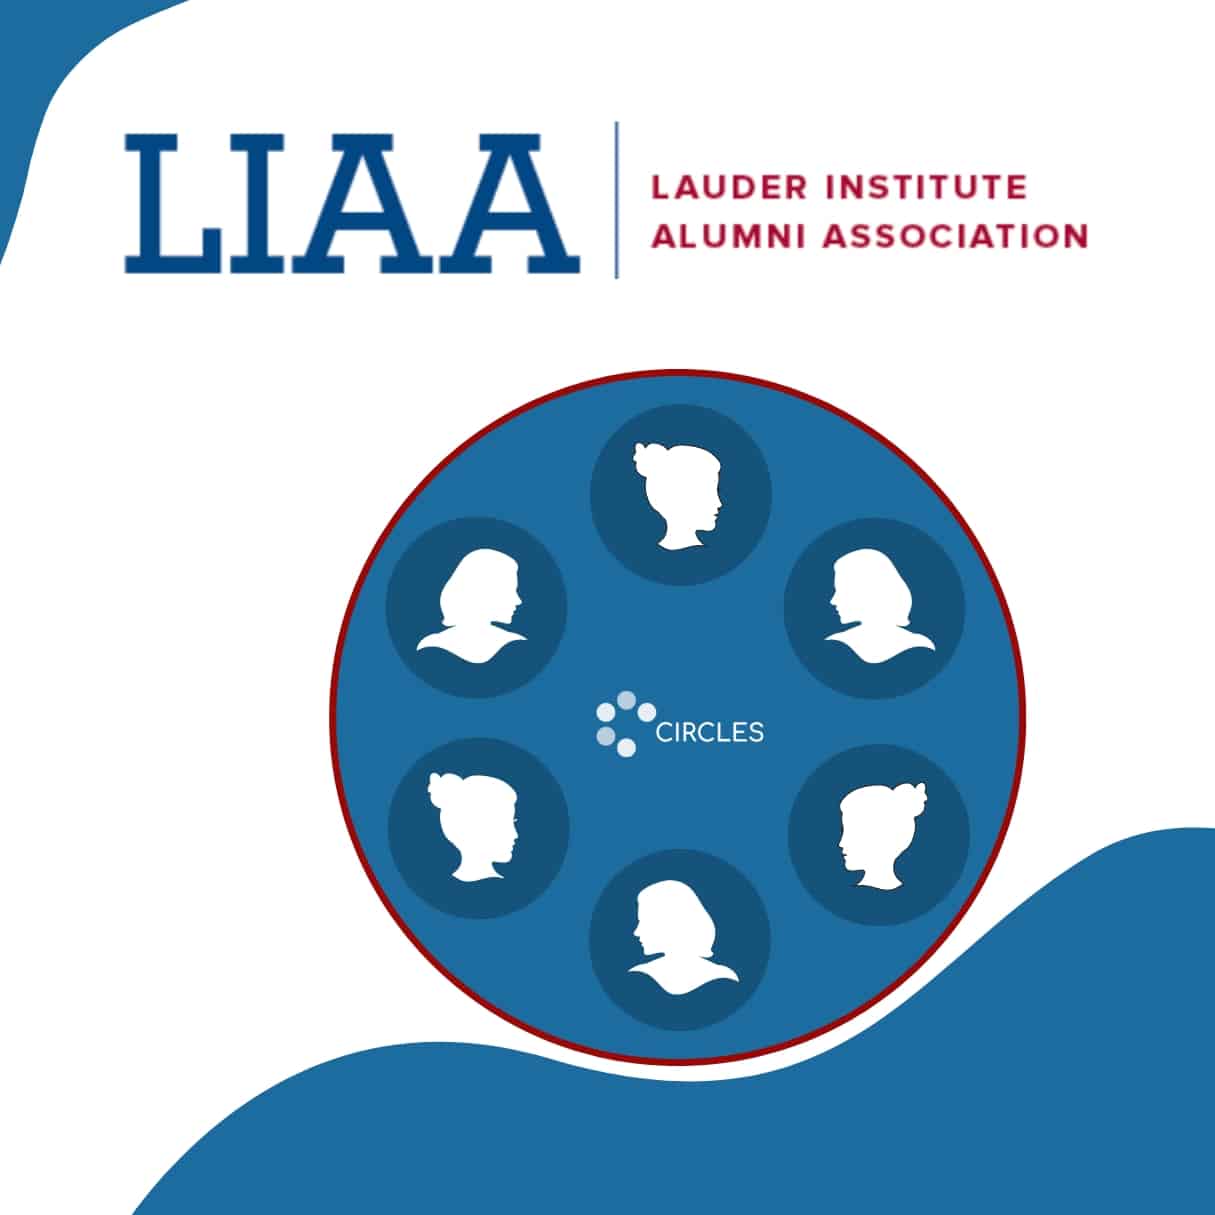 The Lauder Institute Alumni Association